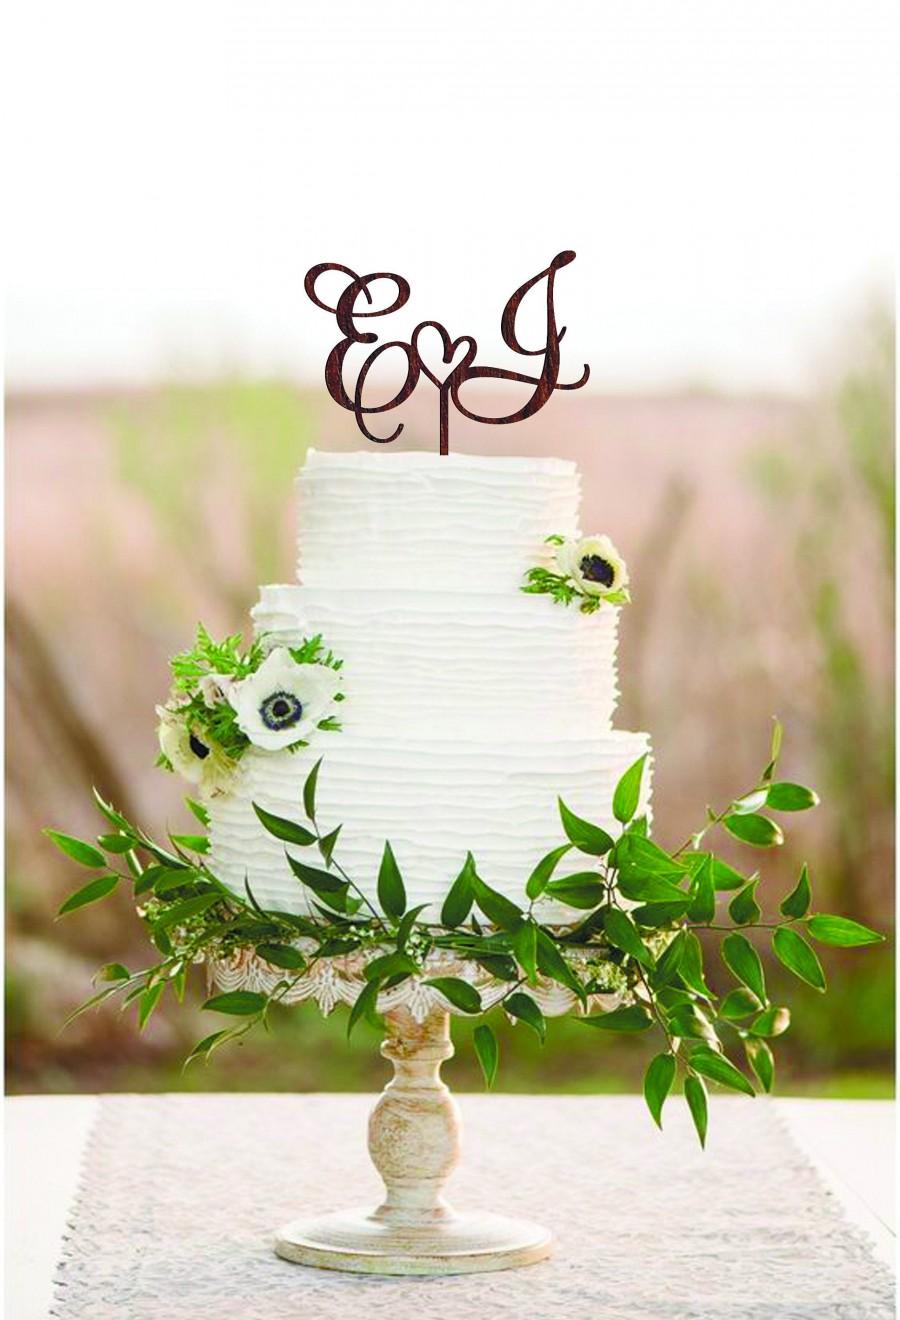 زفاف - Wedding Cake Topper Two letters cake topper J cake topper Cake toppers for wedding Wood rustic cake topper Initial cake topper E Letter j E